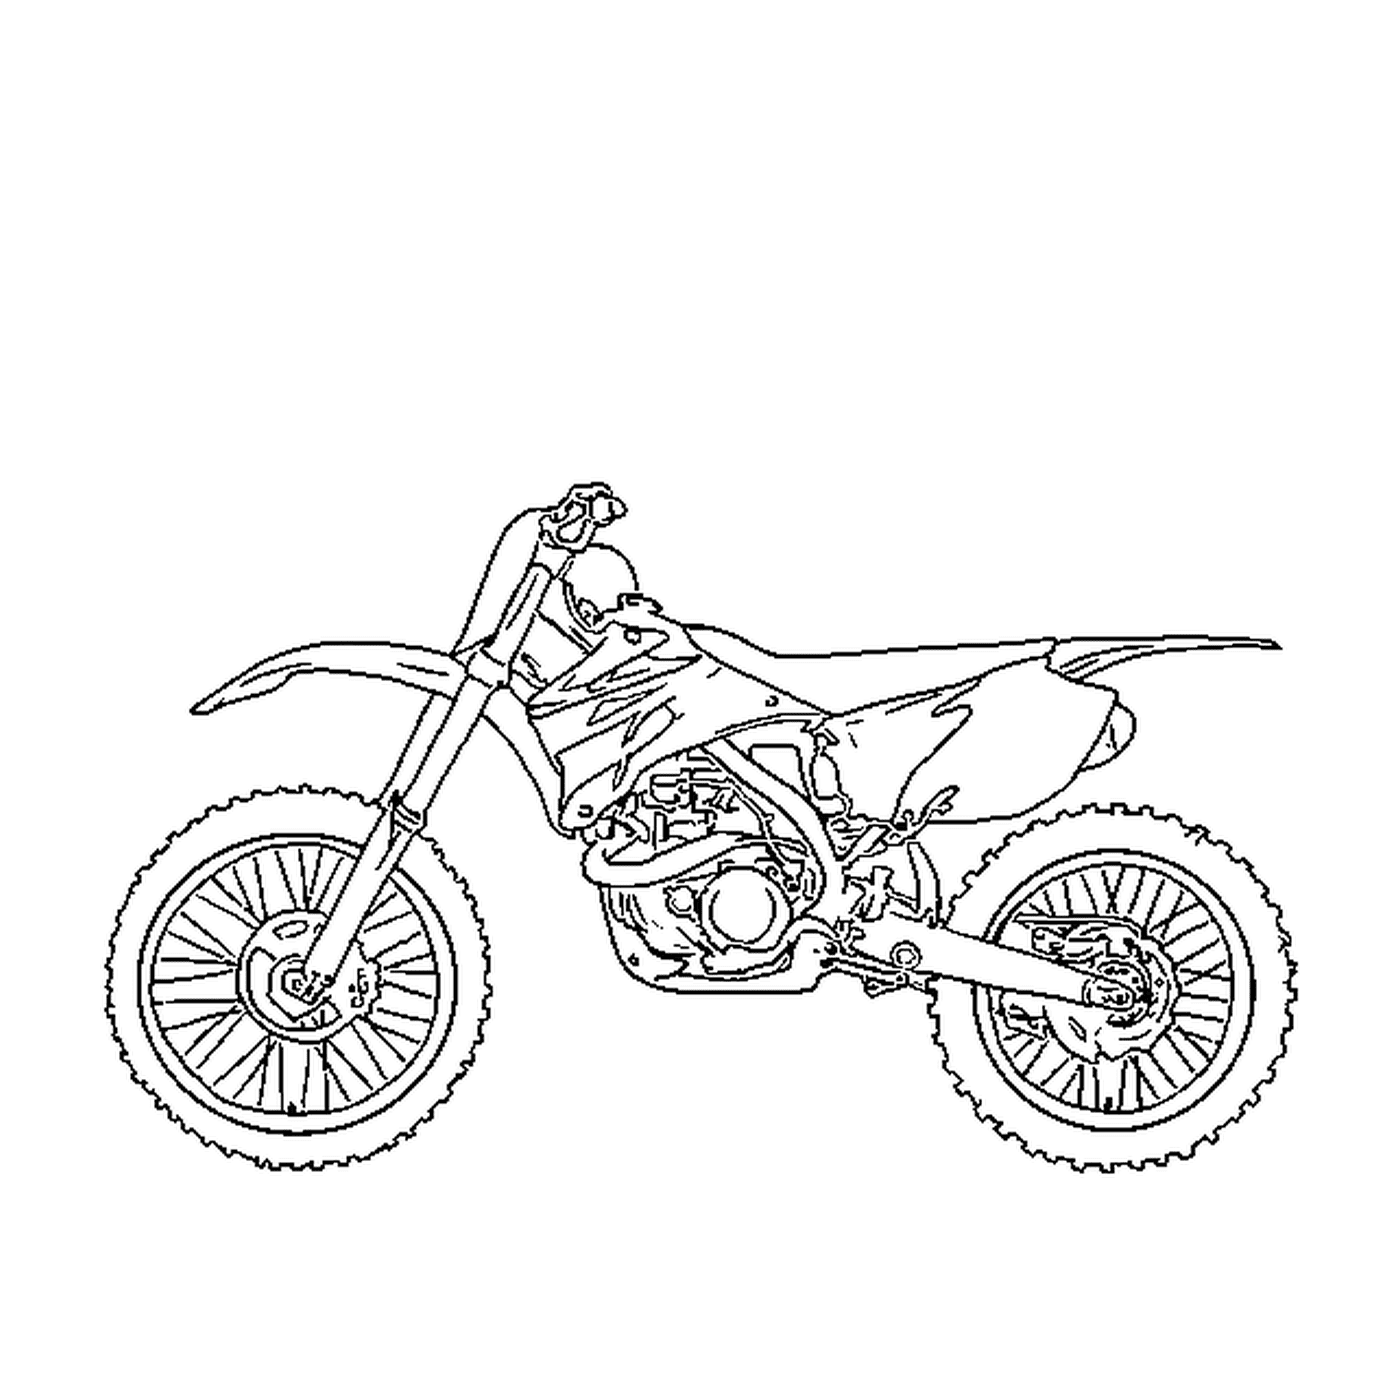  Avventura motocicletta all-terrain 